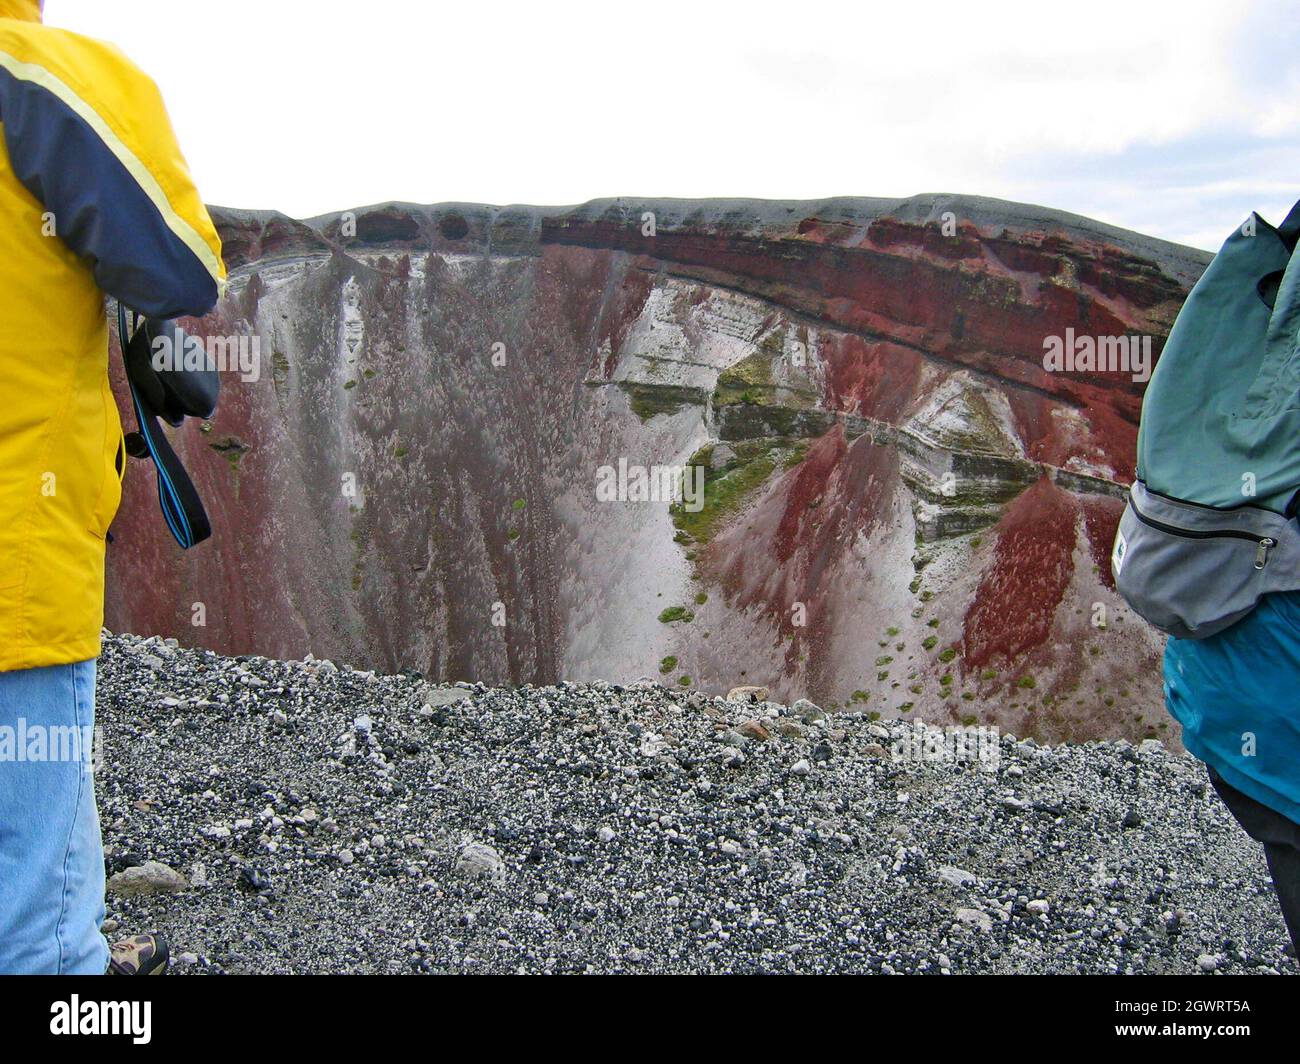 Los visitantes se encuentran en lo alto del Monte Tarawera, un volcán inactivo conocido por su erupción de 1886. Situado en la región de la Bahía de Plenty, en la zona volcánica de Taupo, las paredes del volcán de fisura de los acantilados de scoria roja que se desmoronan ofrecen un paisaje surrealista mientras los visitantes caminan por los acantilados quemados llenos de gritos. Foto de stock